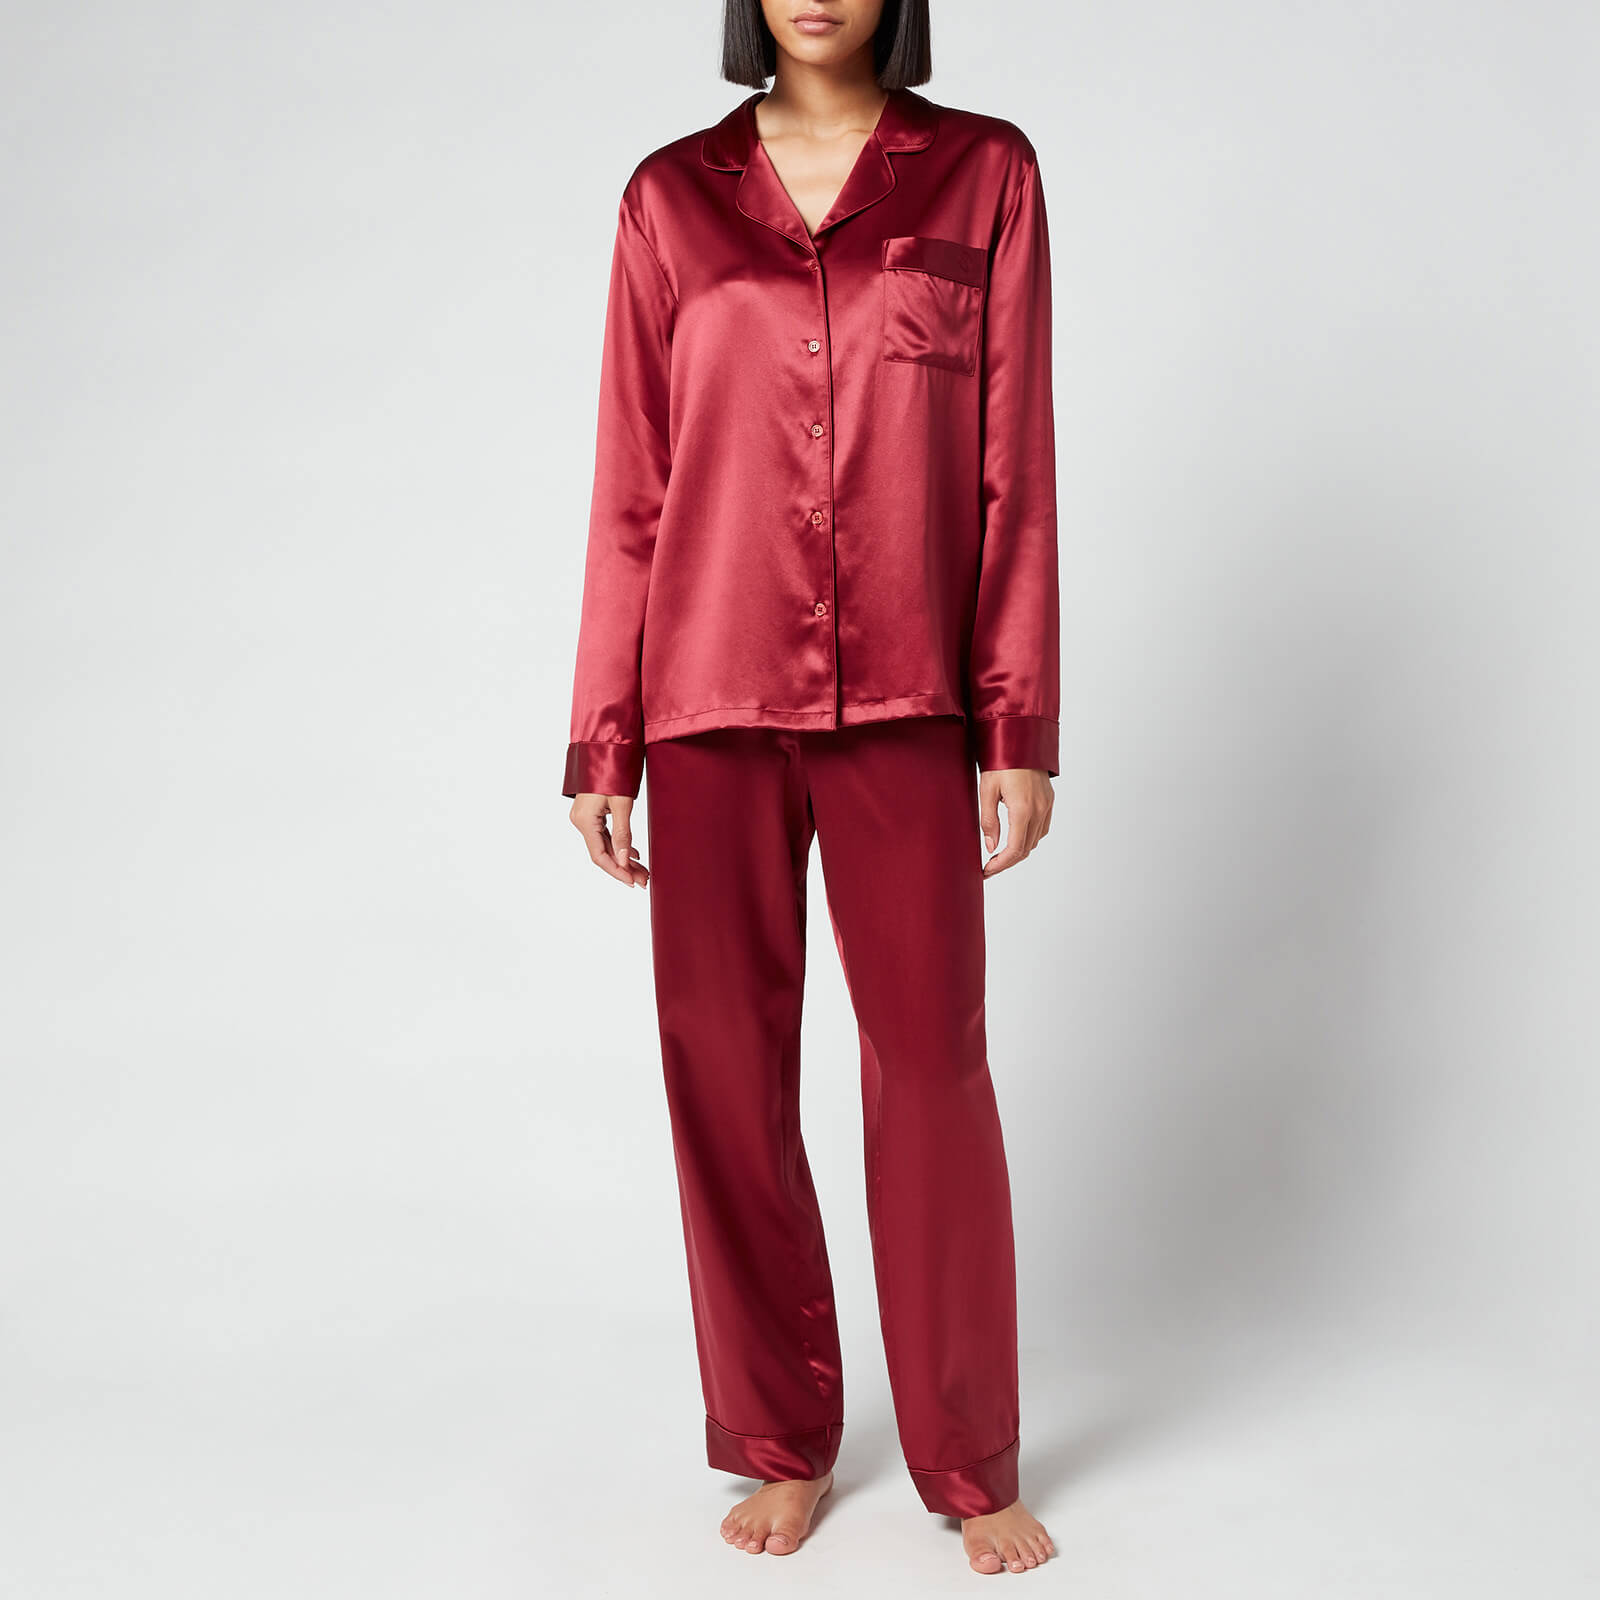 ESPA Silk Pyjamas - Burgundy - S